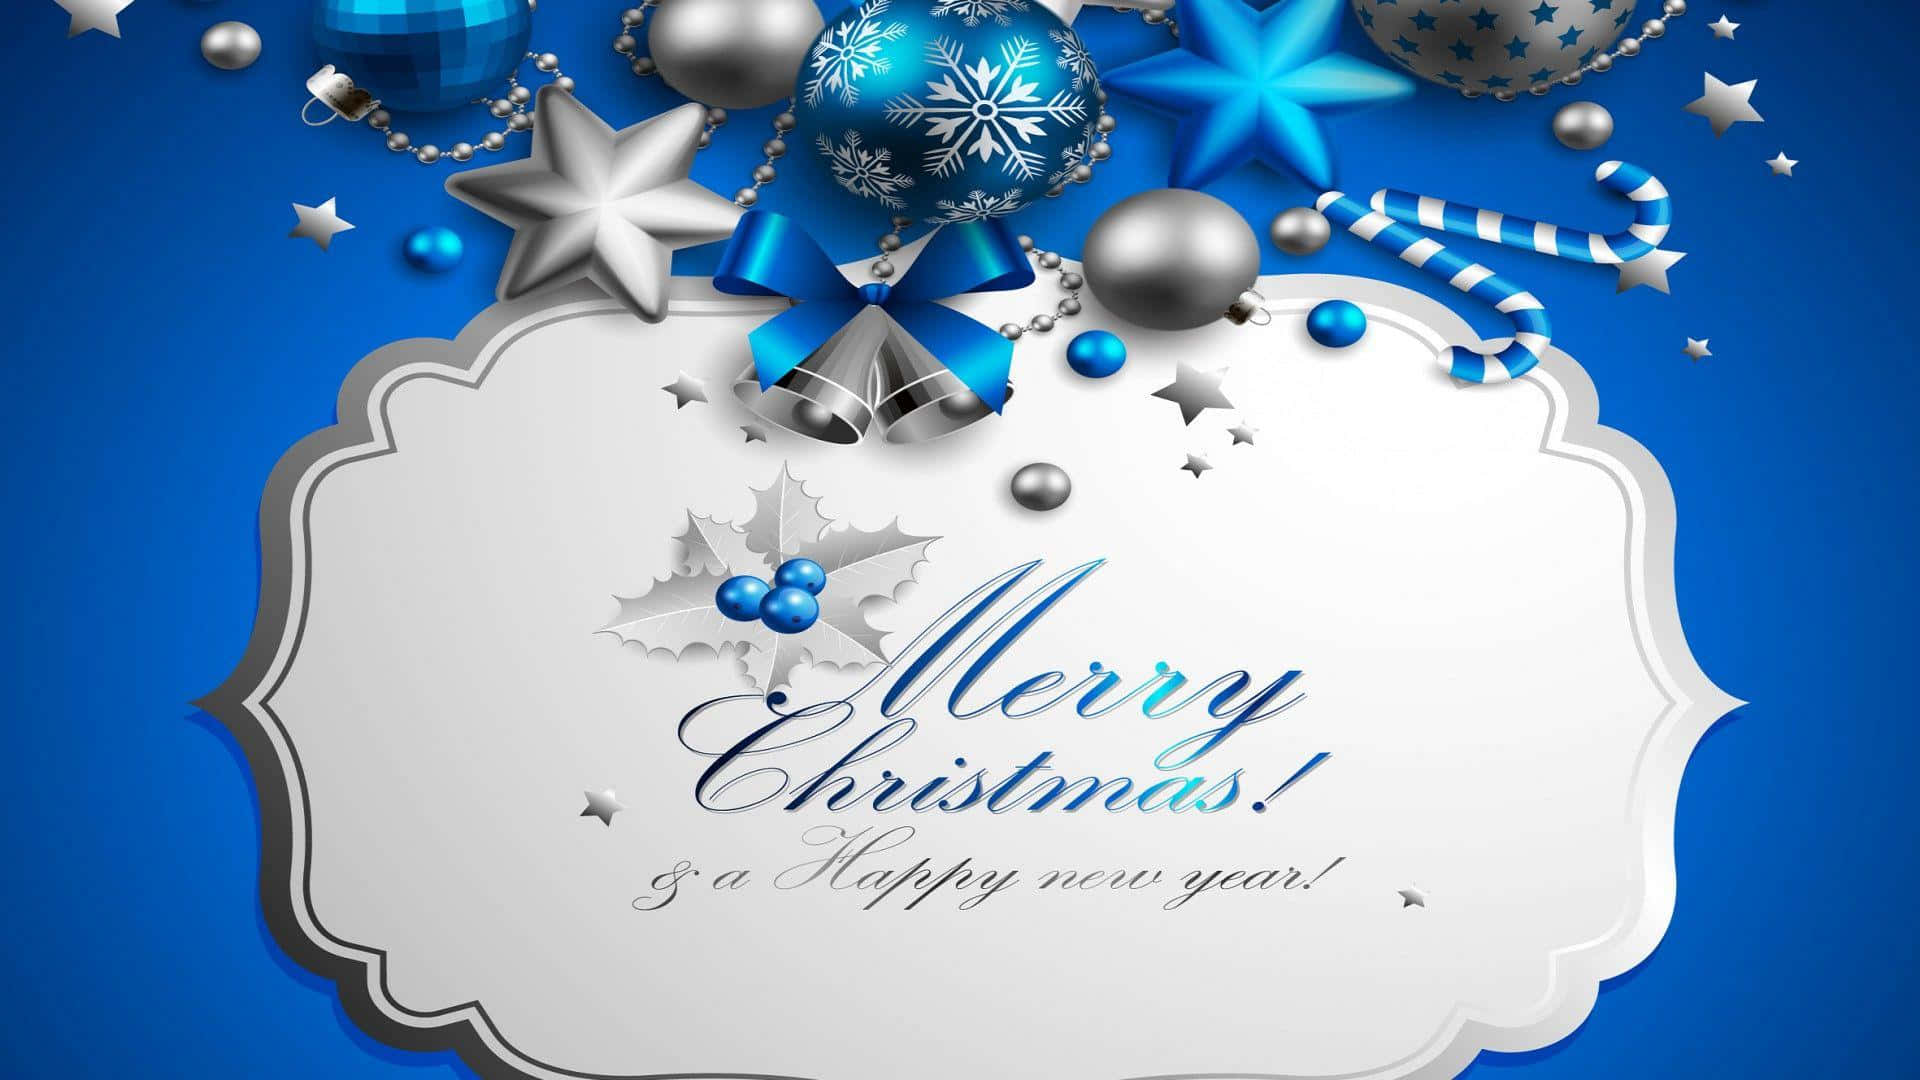 Salutai Tuoi Cari Con Un Gioioso E Buon Natale Con Questa Speciale E-card.